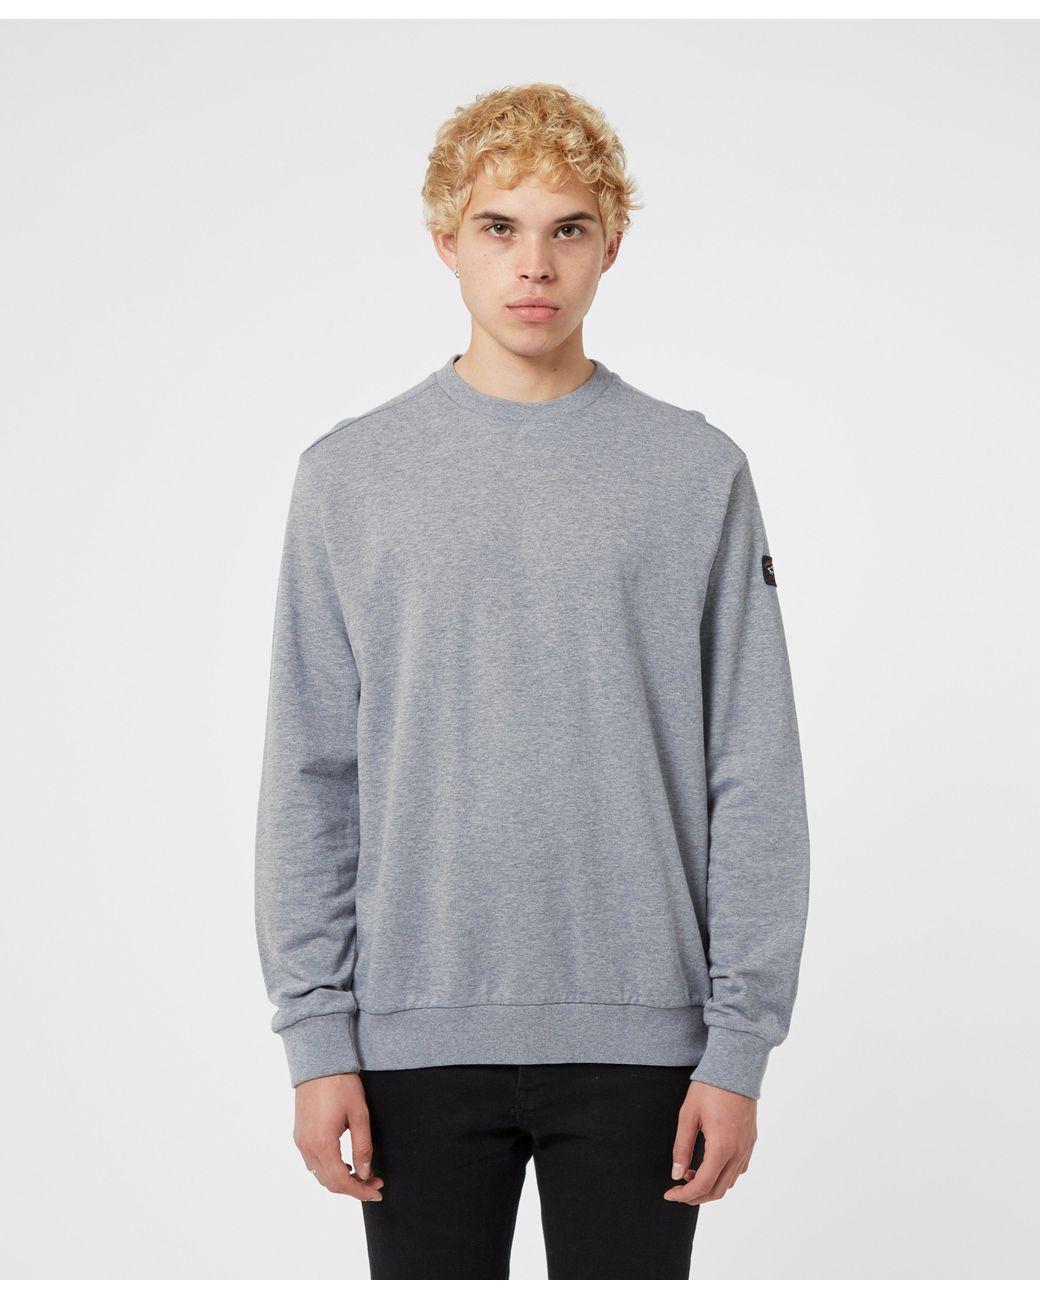 Paul & Shark Crew Neck Sweatshirt in Grey (Gray) for Men - Lyst